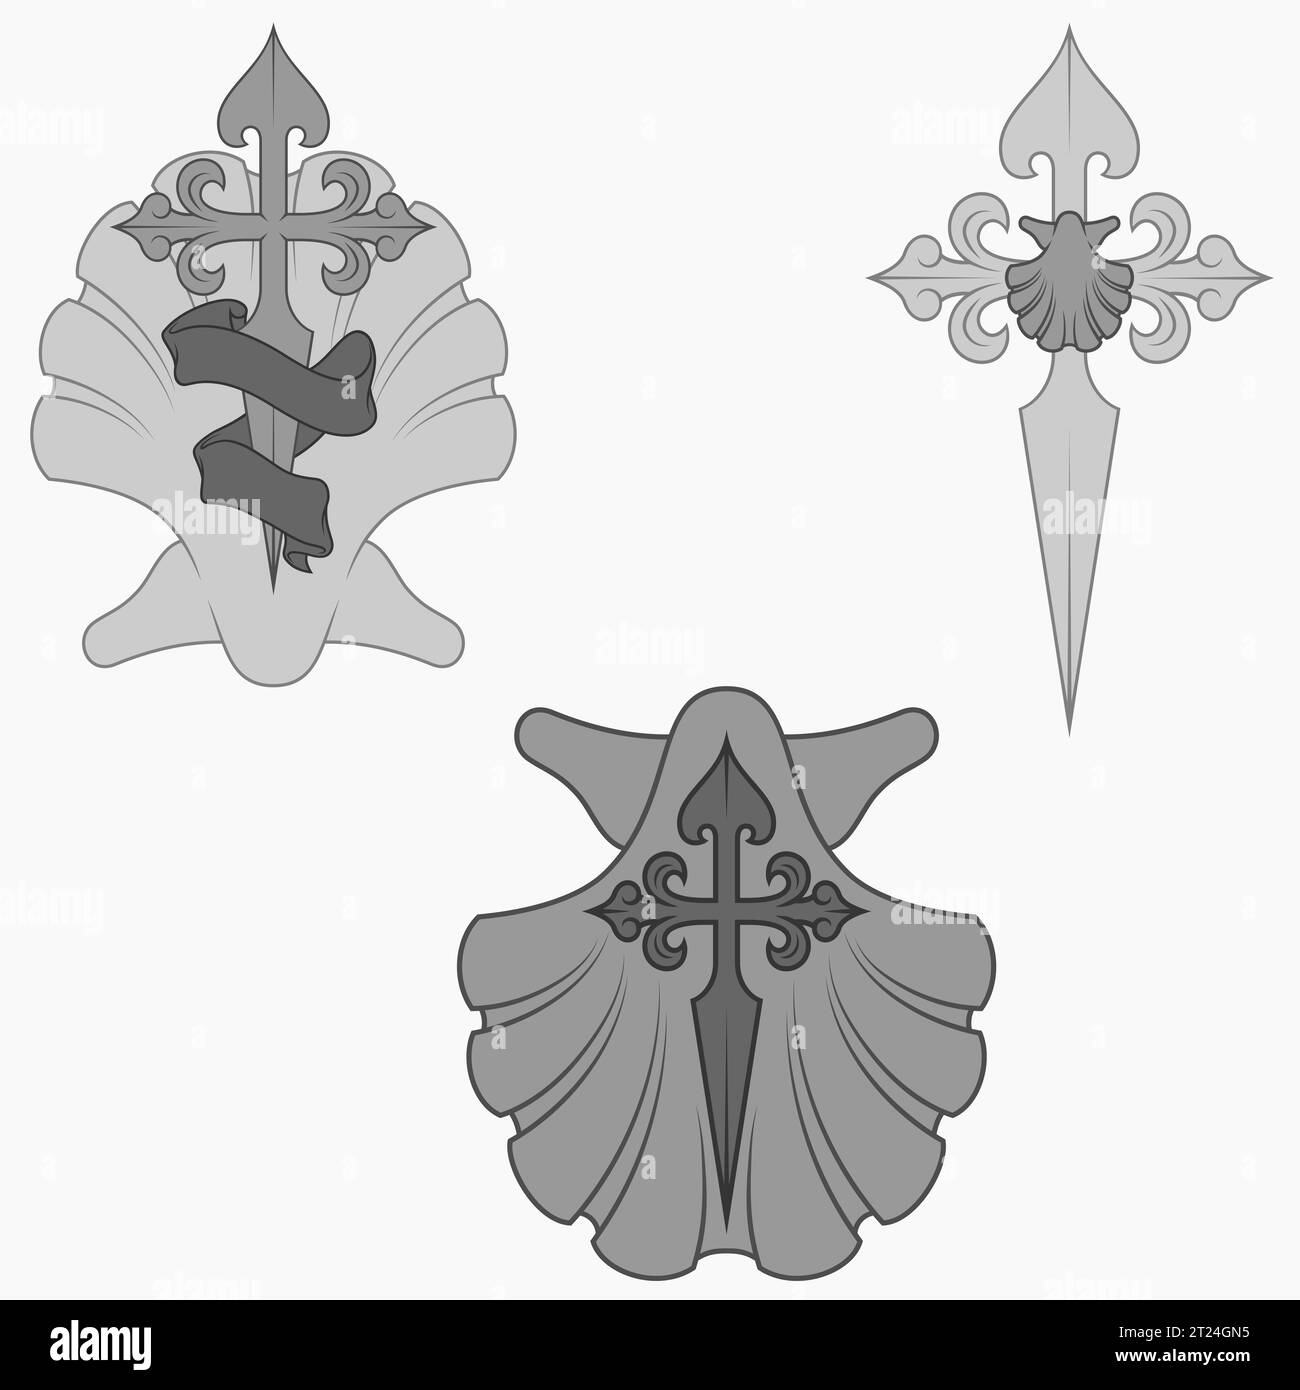 Disegno vettoriale della simbologia cristiana dell'apostolo santiago, croce di santiago con capesante, spada e nastro Illustrazione Vettoriale